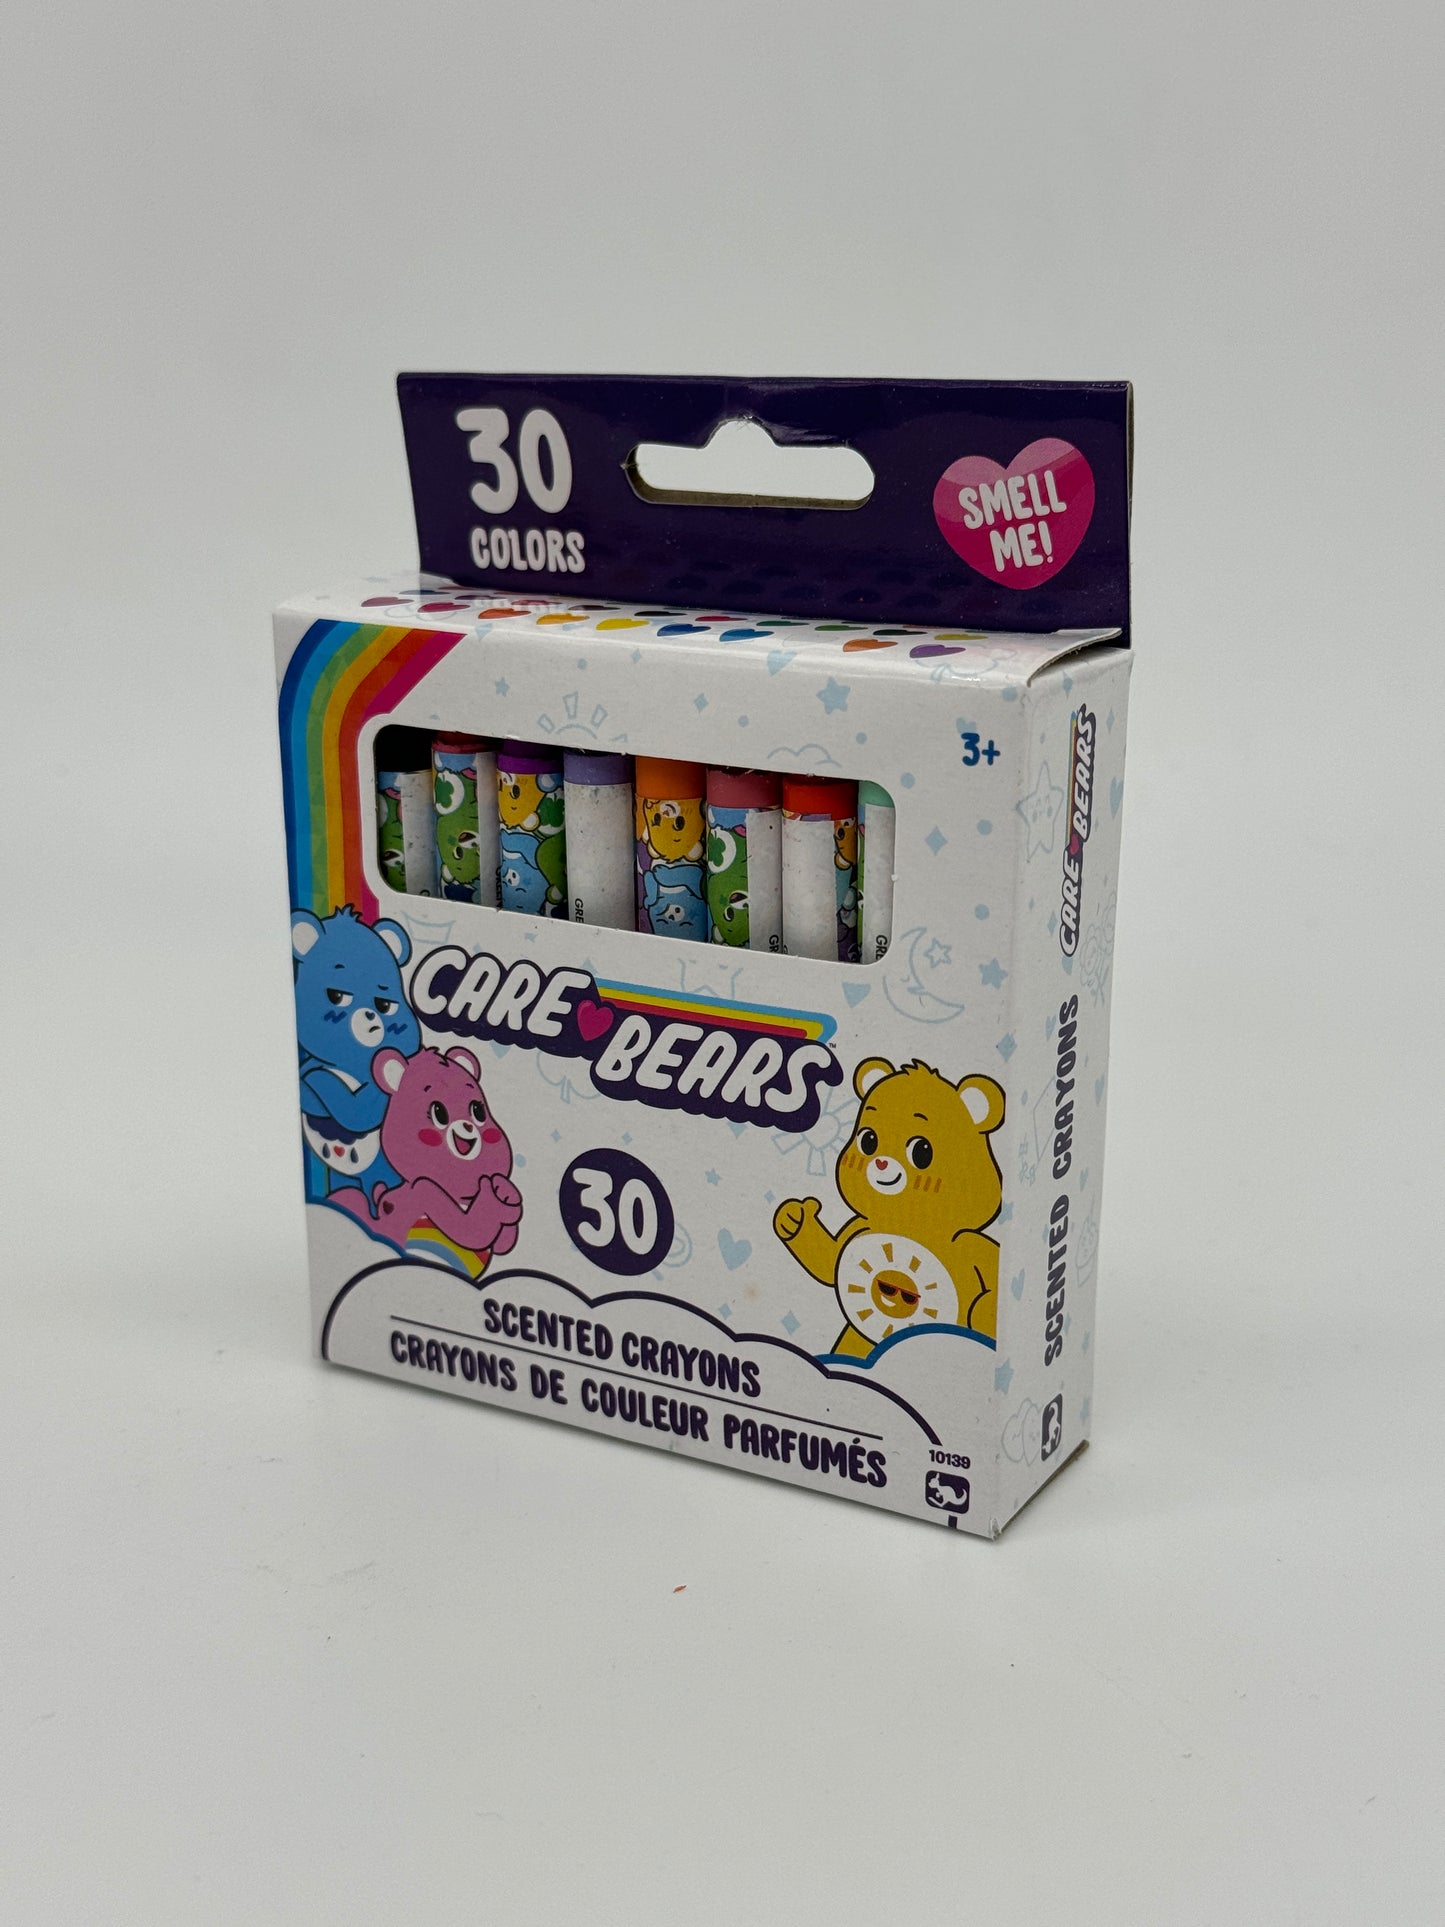 Wachsmalstifte "Care Bears" 30 Stifte verschiedene Farben mit Duft (2023)